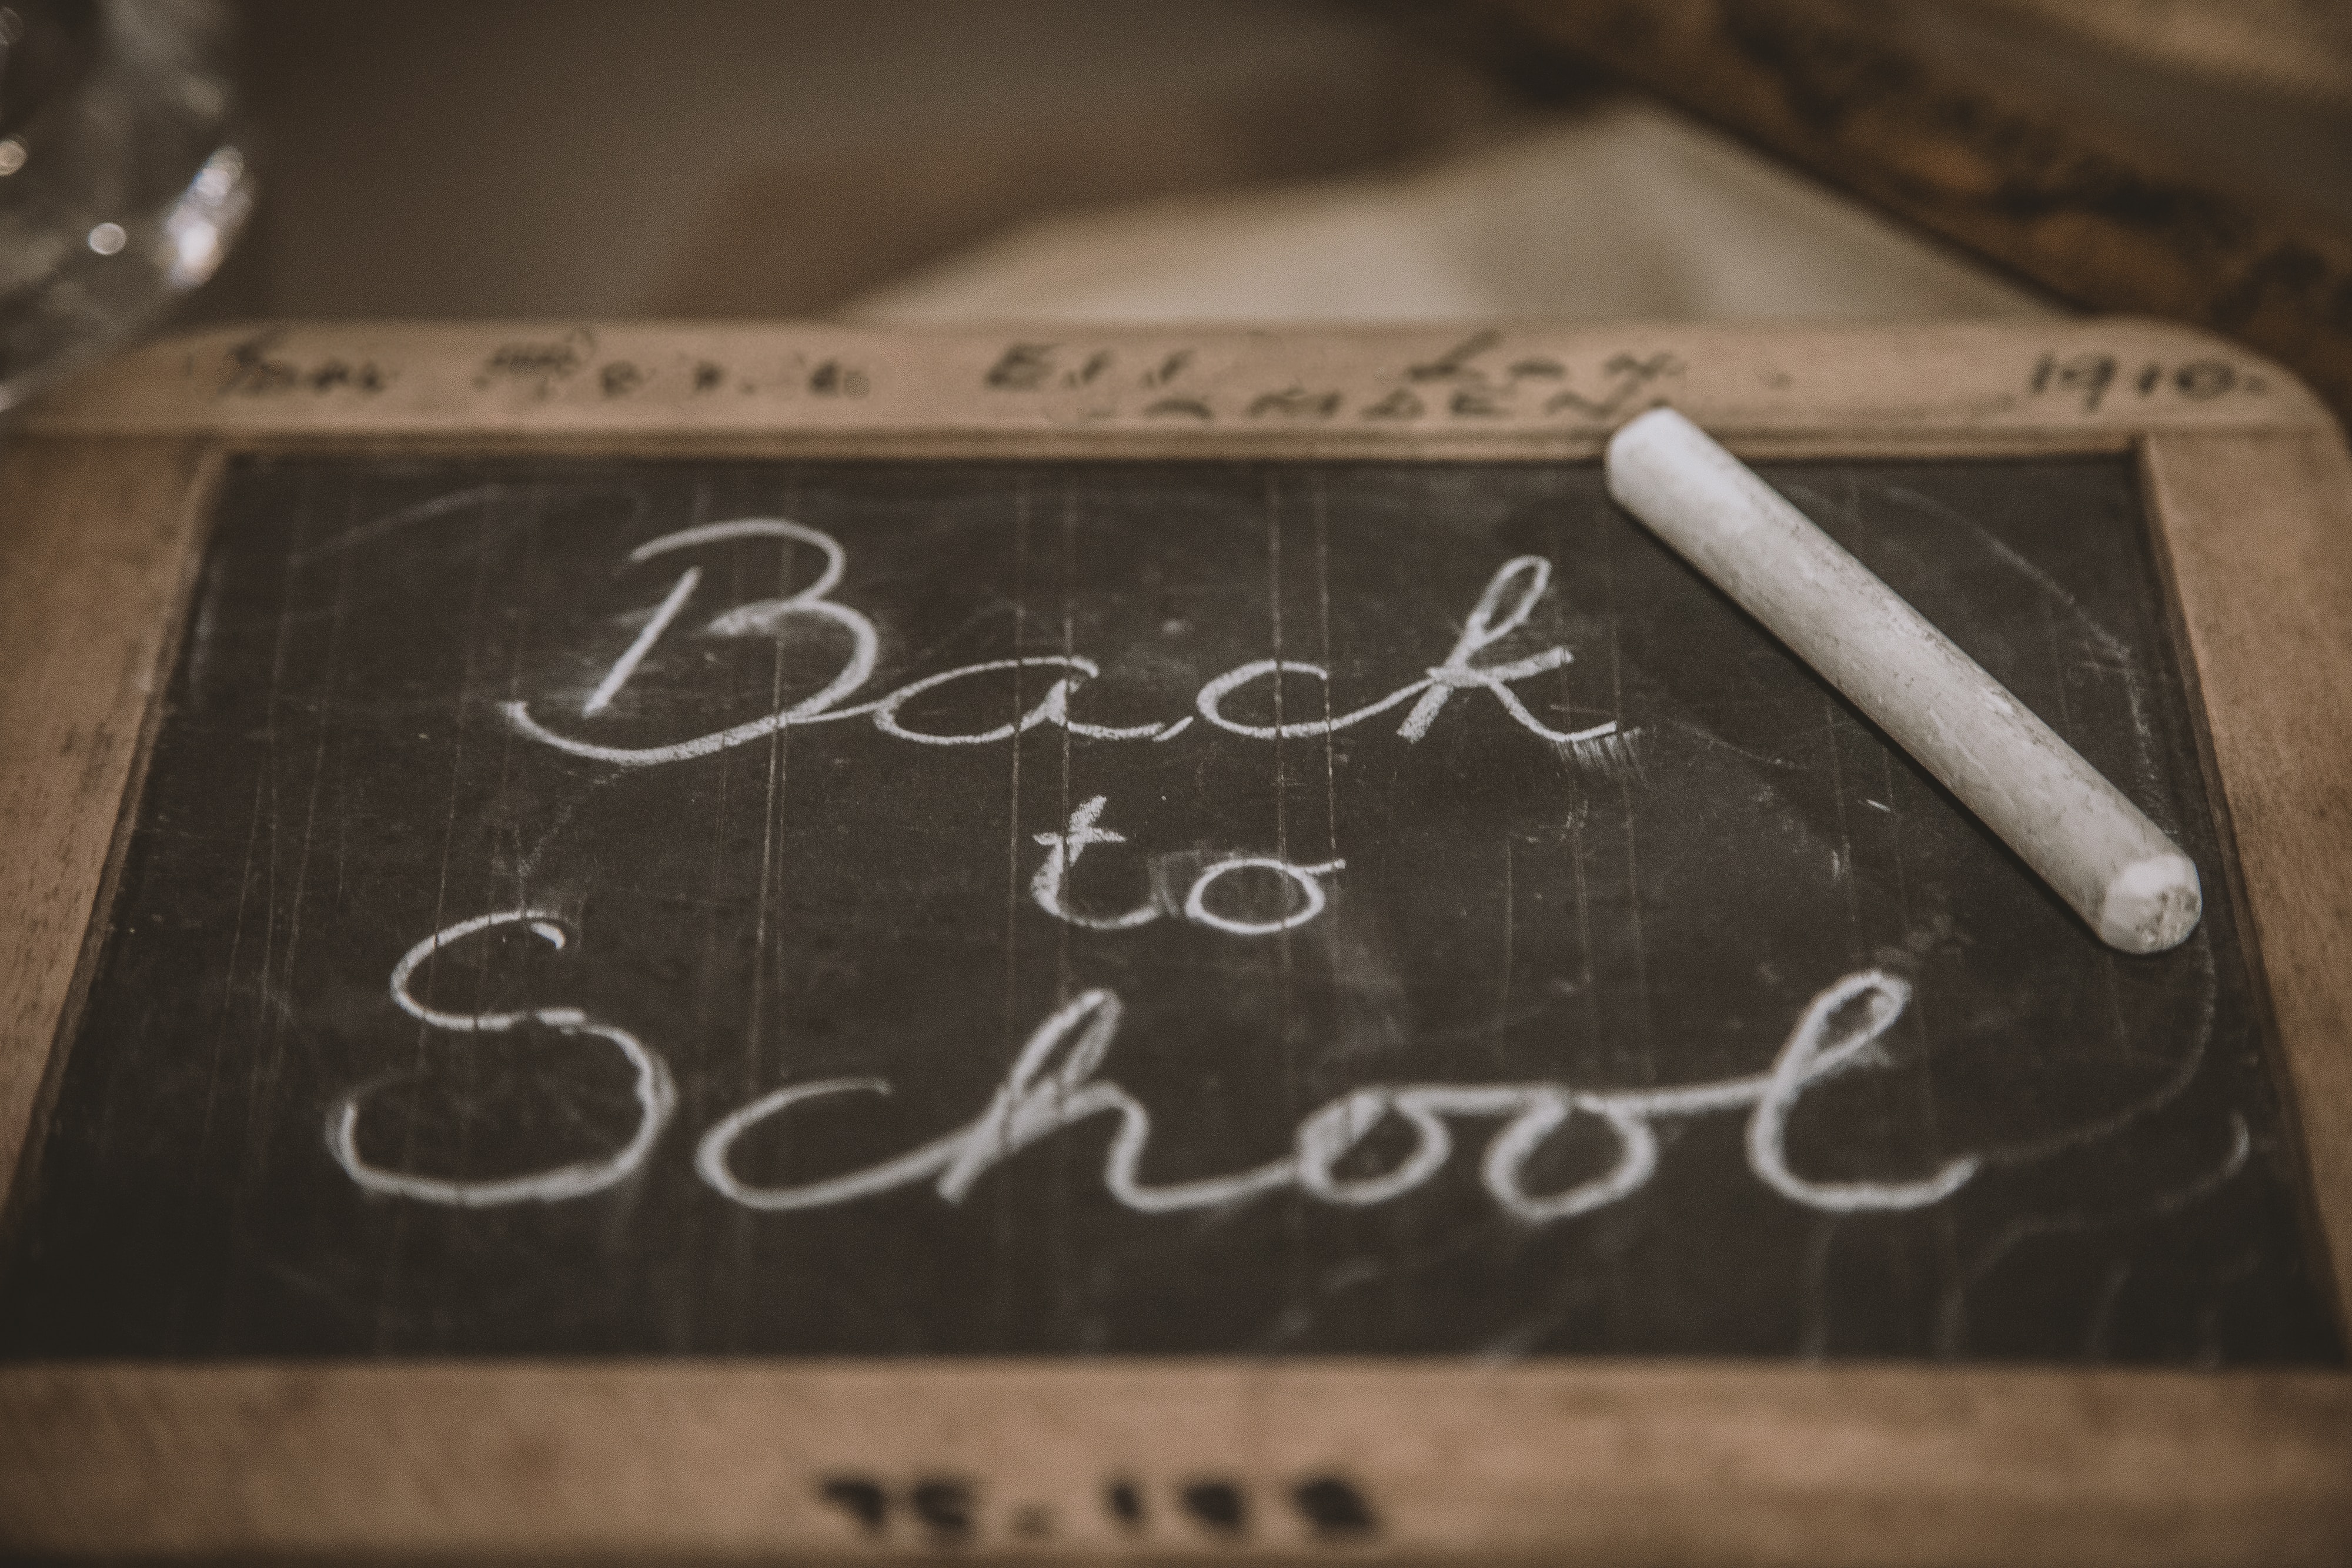 Back to School written on a blackboard